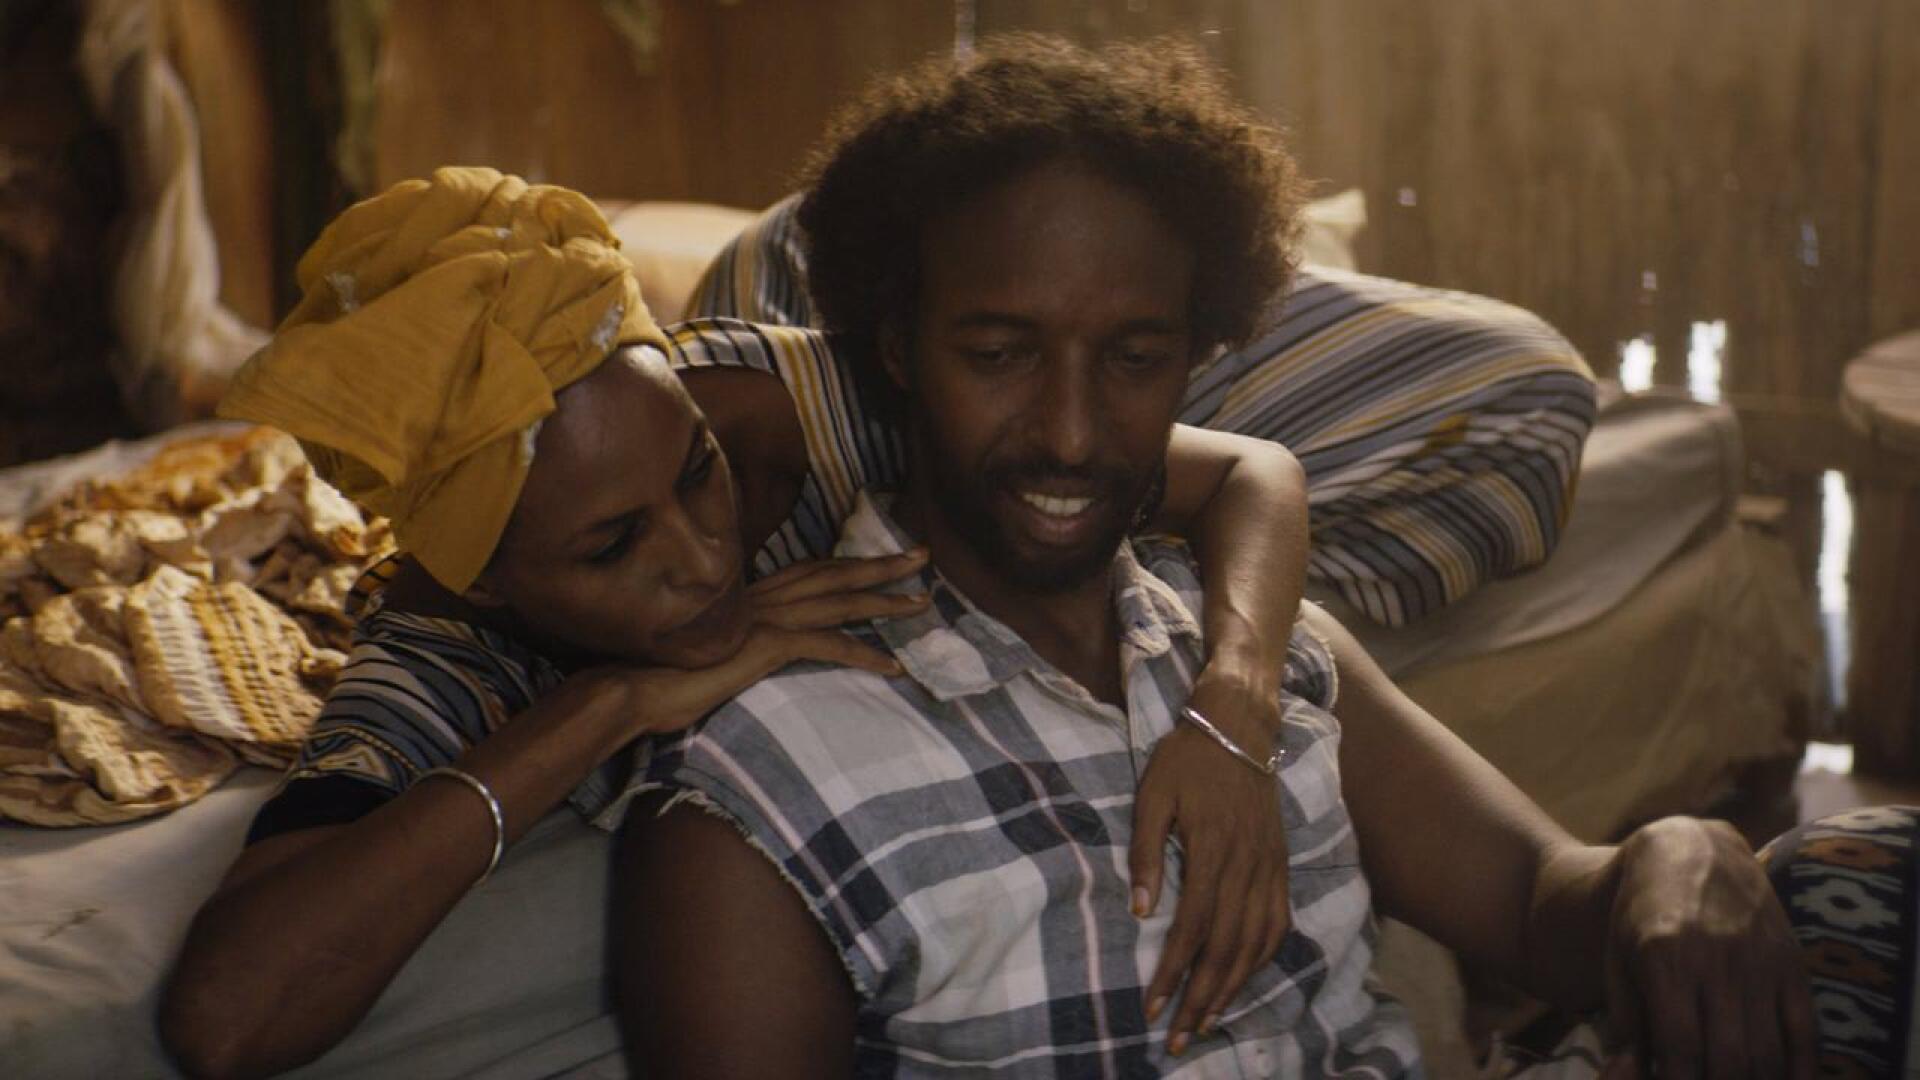 Still-kuva elokuvasta Guled & Nasra, jonka on ohjannut ohjaaja Khadar Ahmed. Kuvassa ovat näyttelijät vasemmalta oikealle Yasmin Warsame (Nasra) ja Omar Abdi (Guled). 